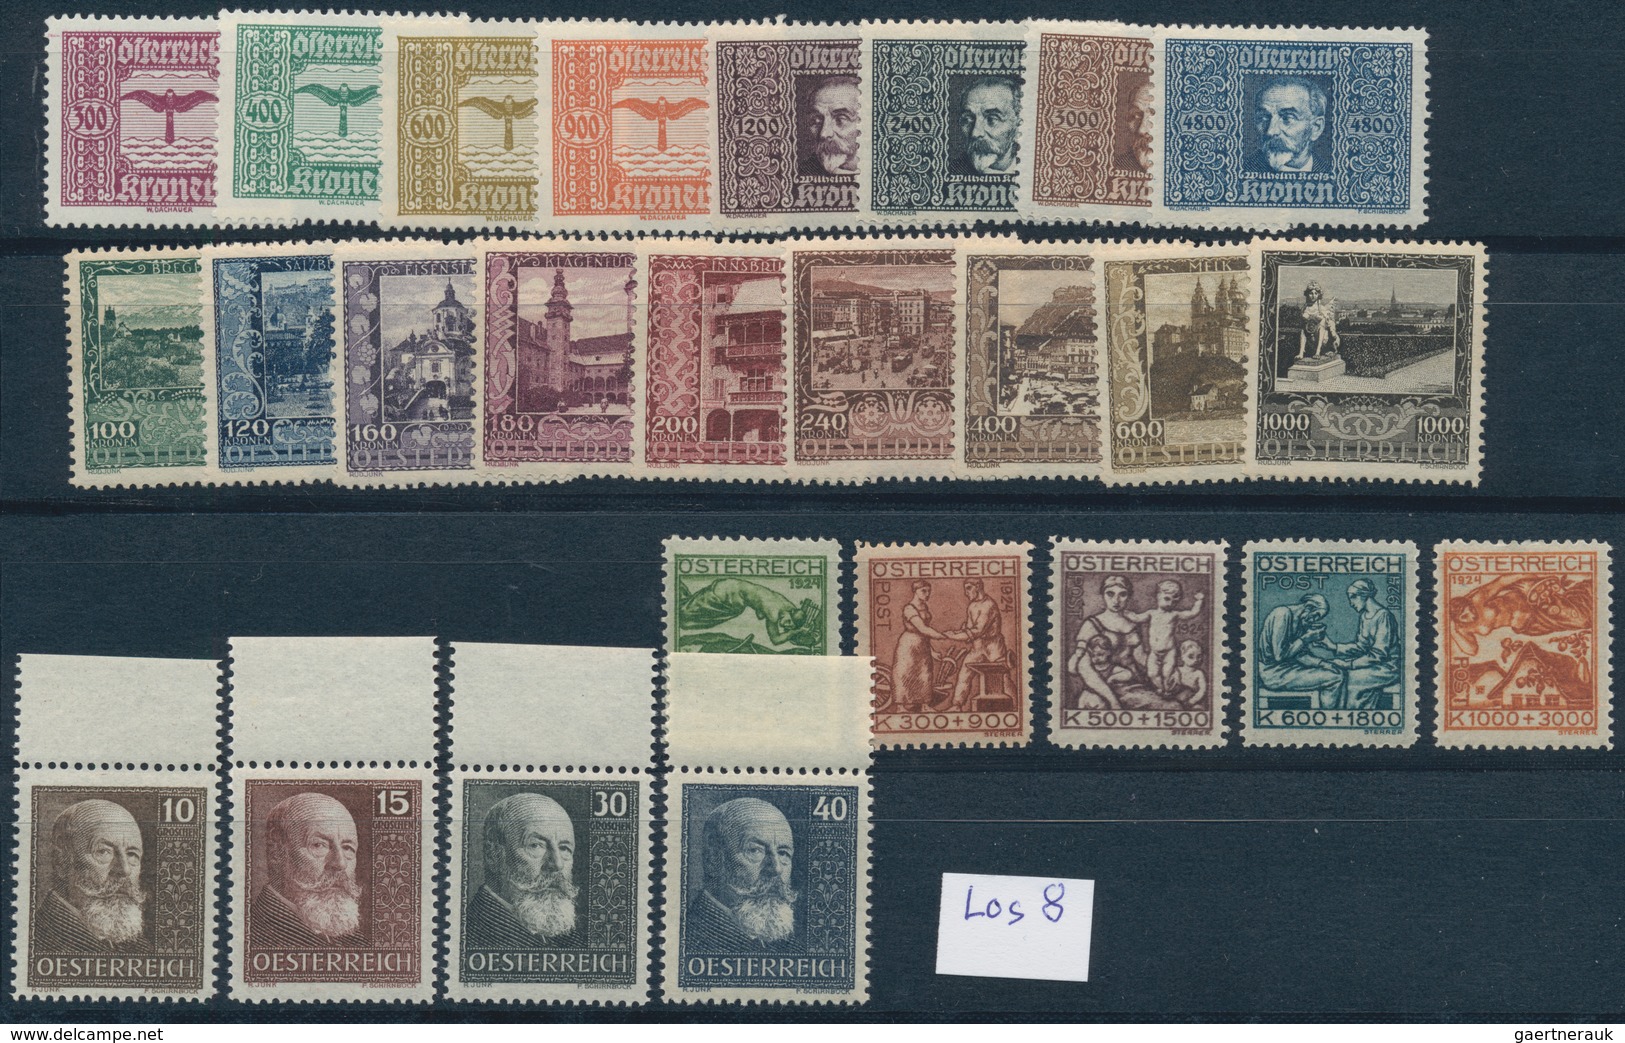 Österreich: 1922/1926, Postfrische Partie Auf Steckkarten (siehe Www). Mi. Ca. 370,- €. - Colecciones